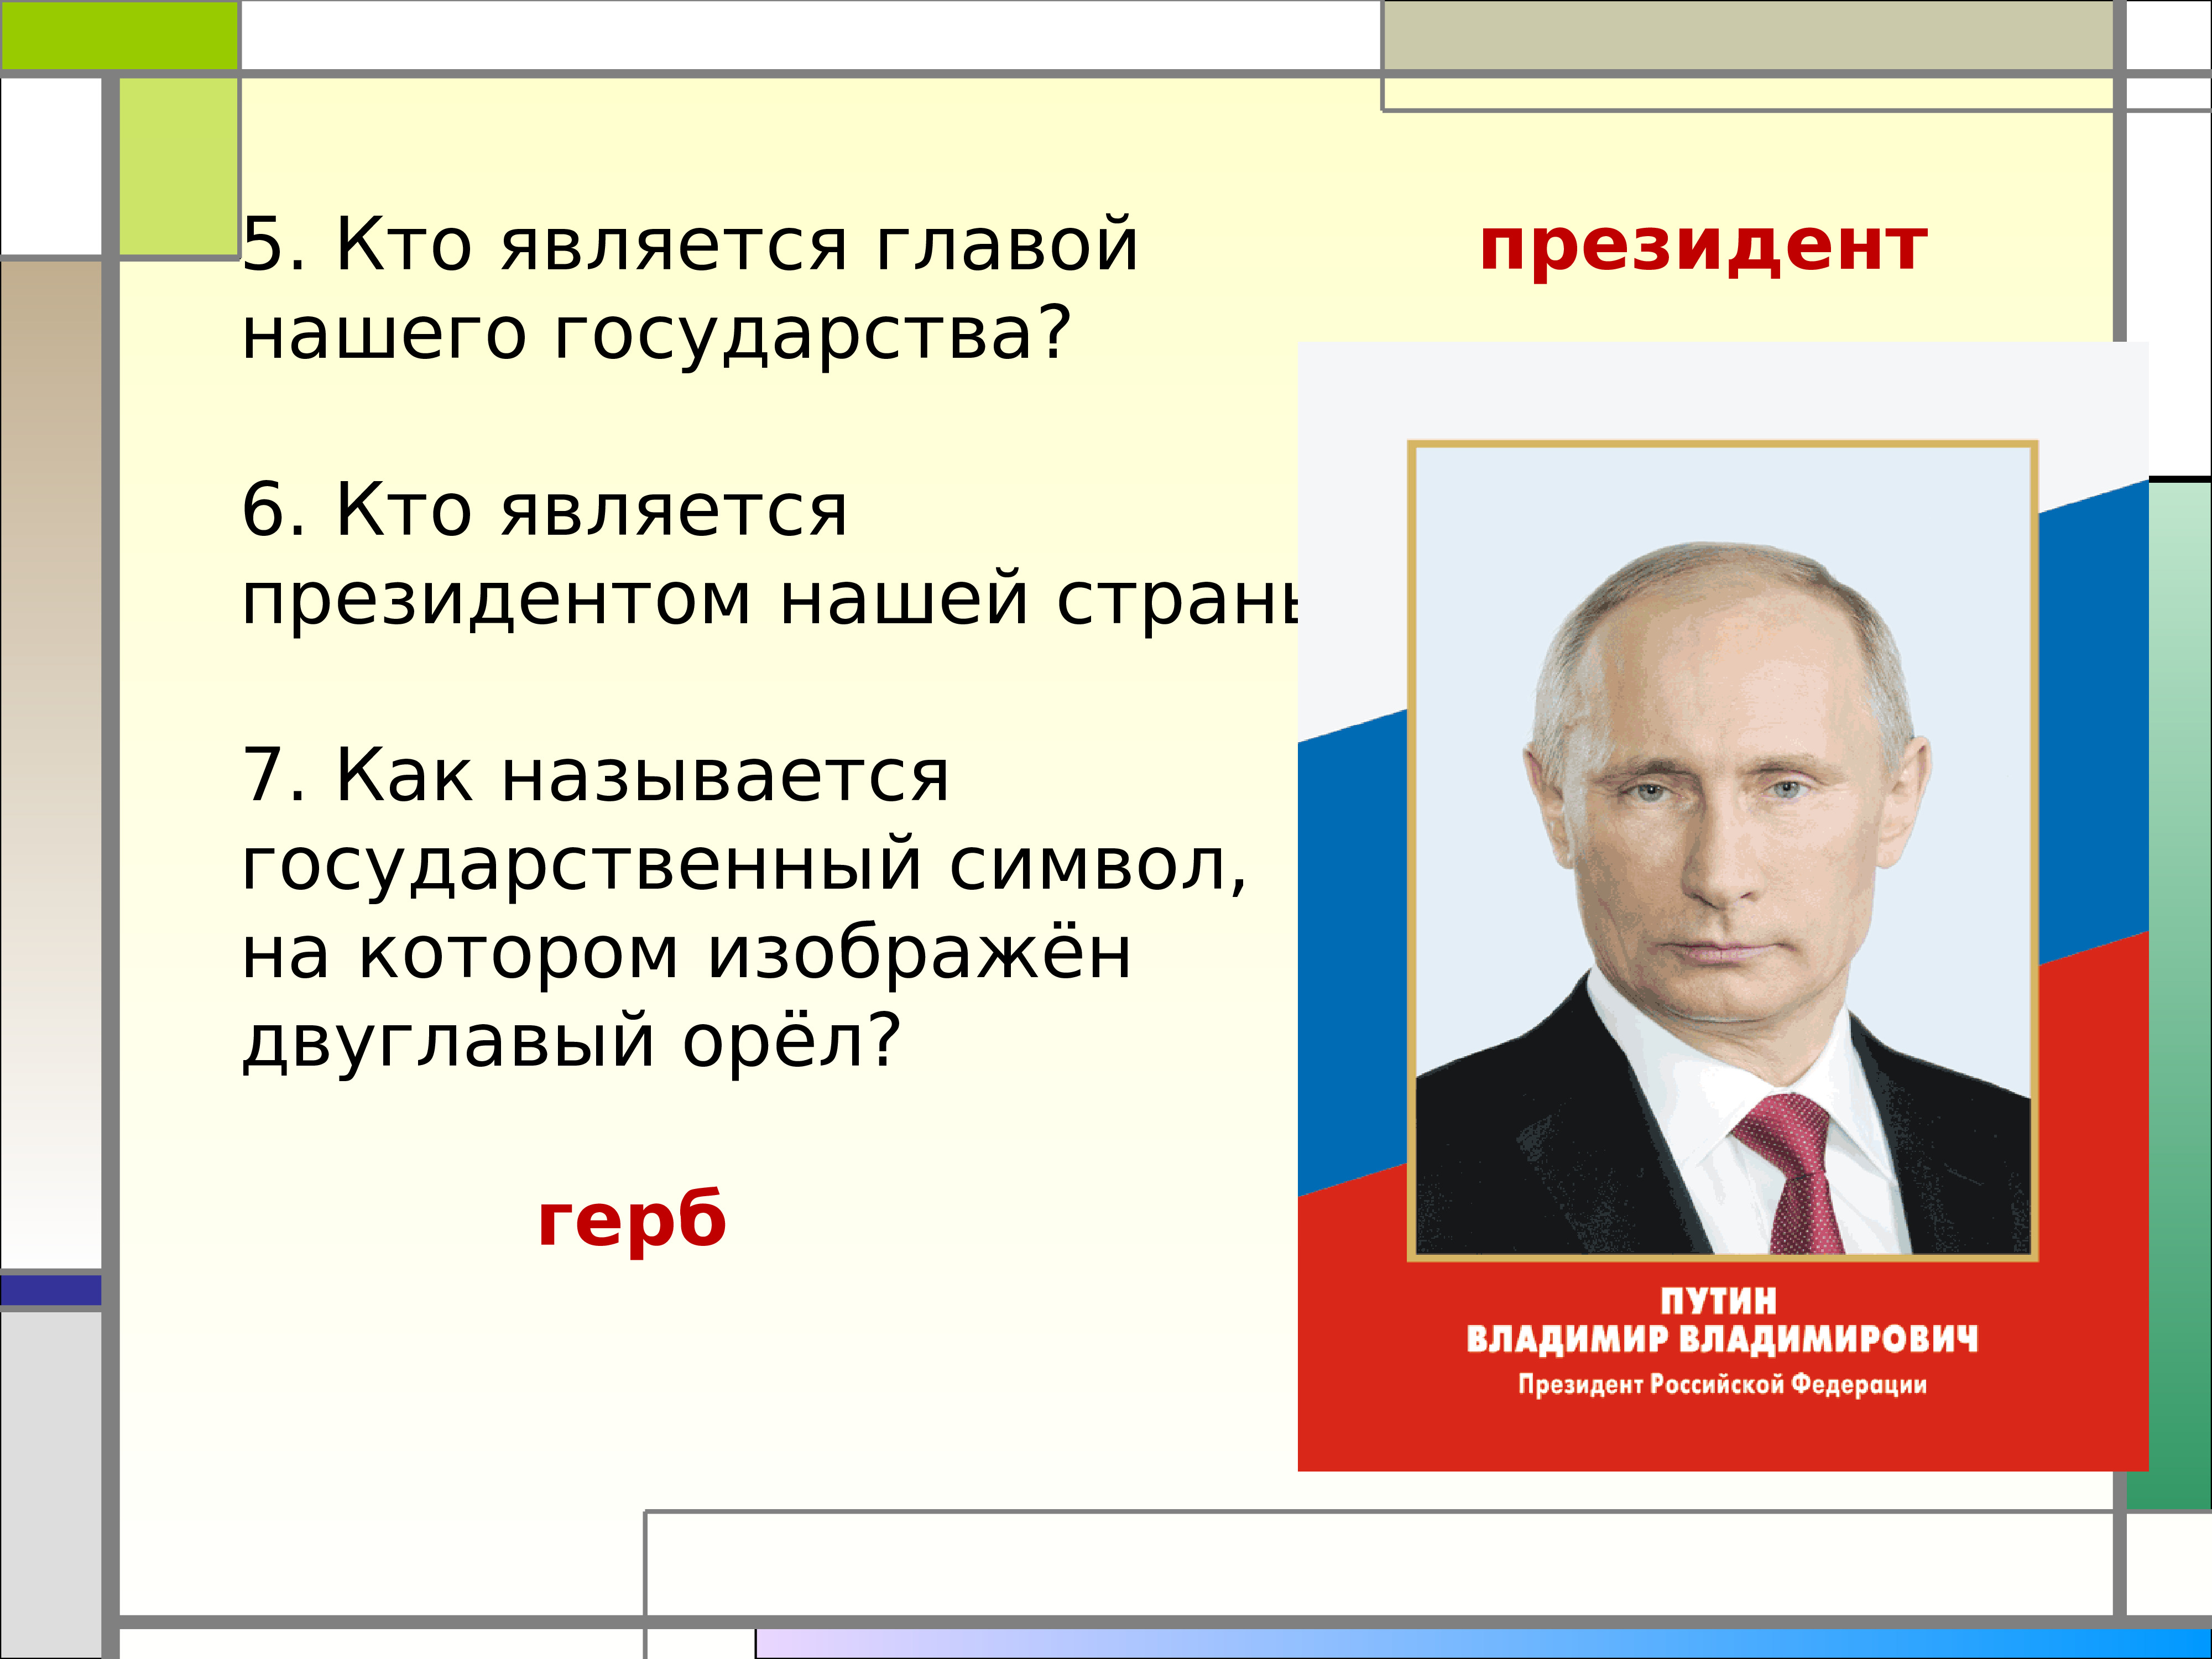 Кто является президентом россии. Кто является президентом нашей страны. Главой нашего государства является. Гла нашего государства. Кто является главой нашей страны.